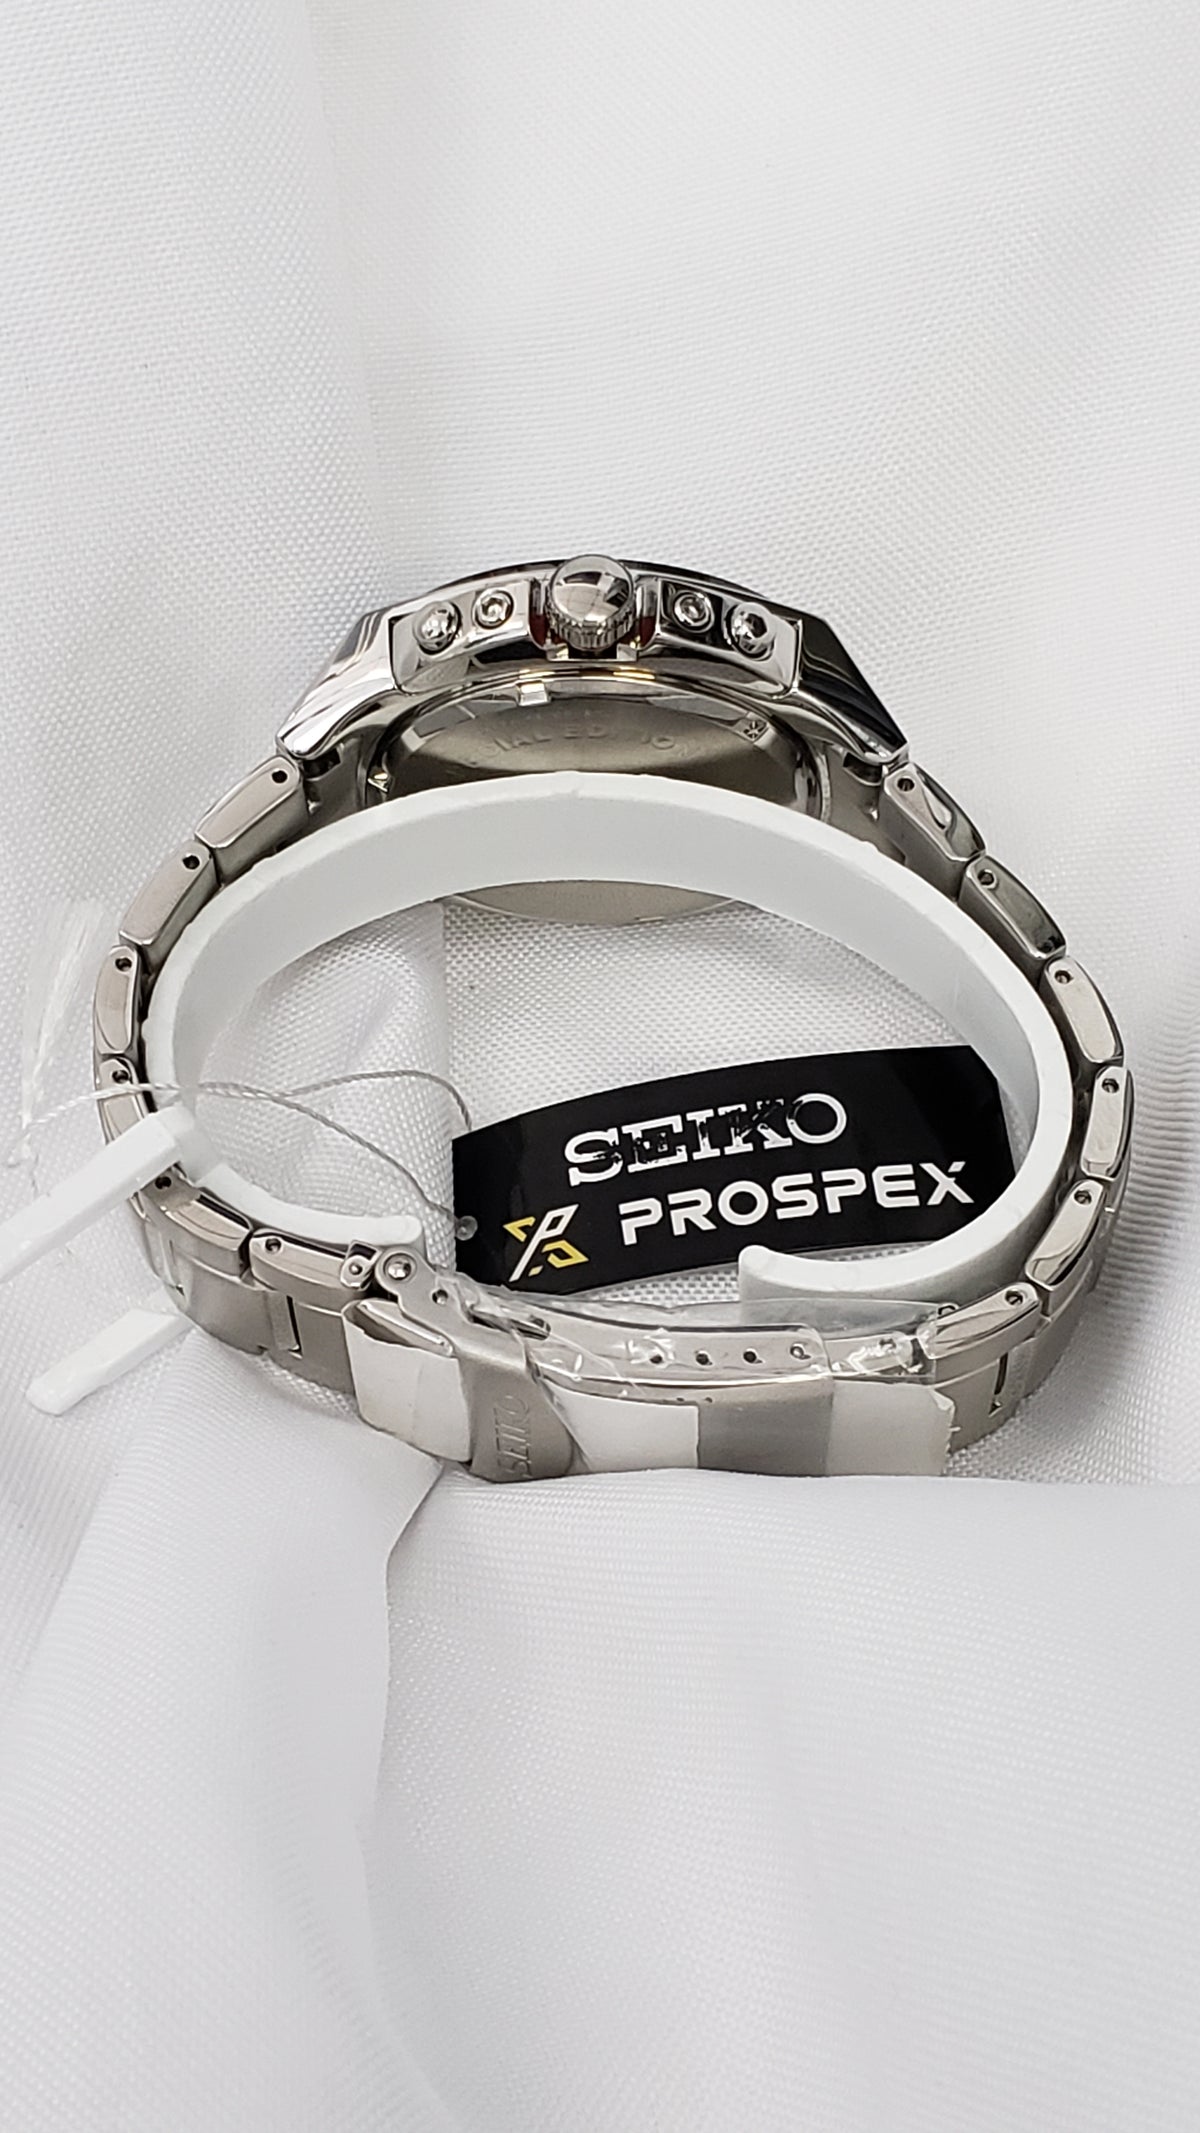 New Seiko Prospex SSC549 World Time Chronograph